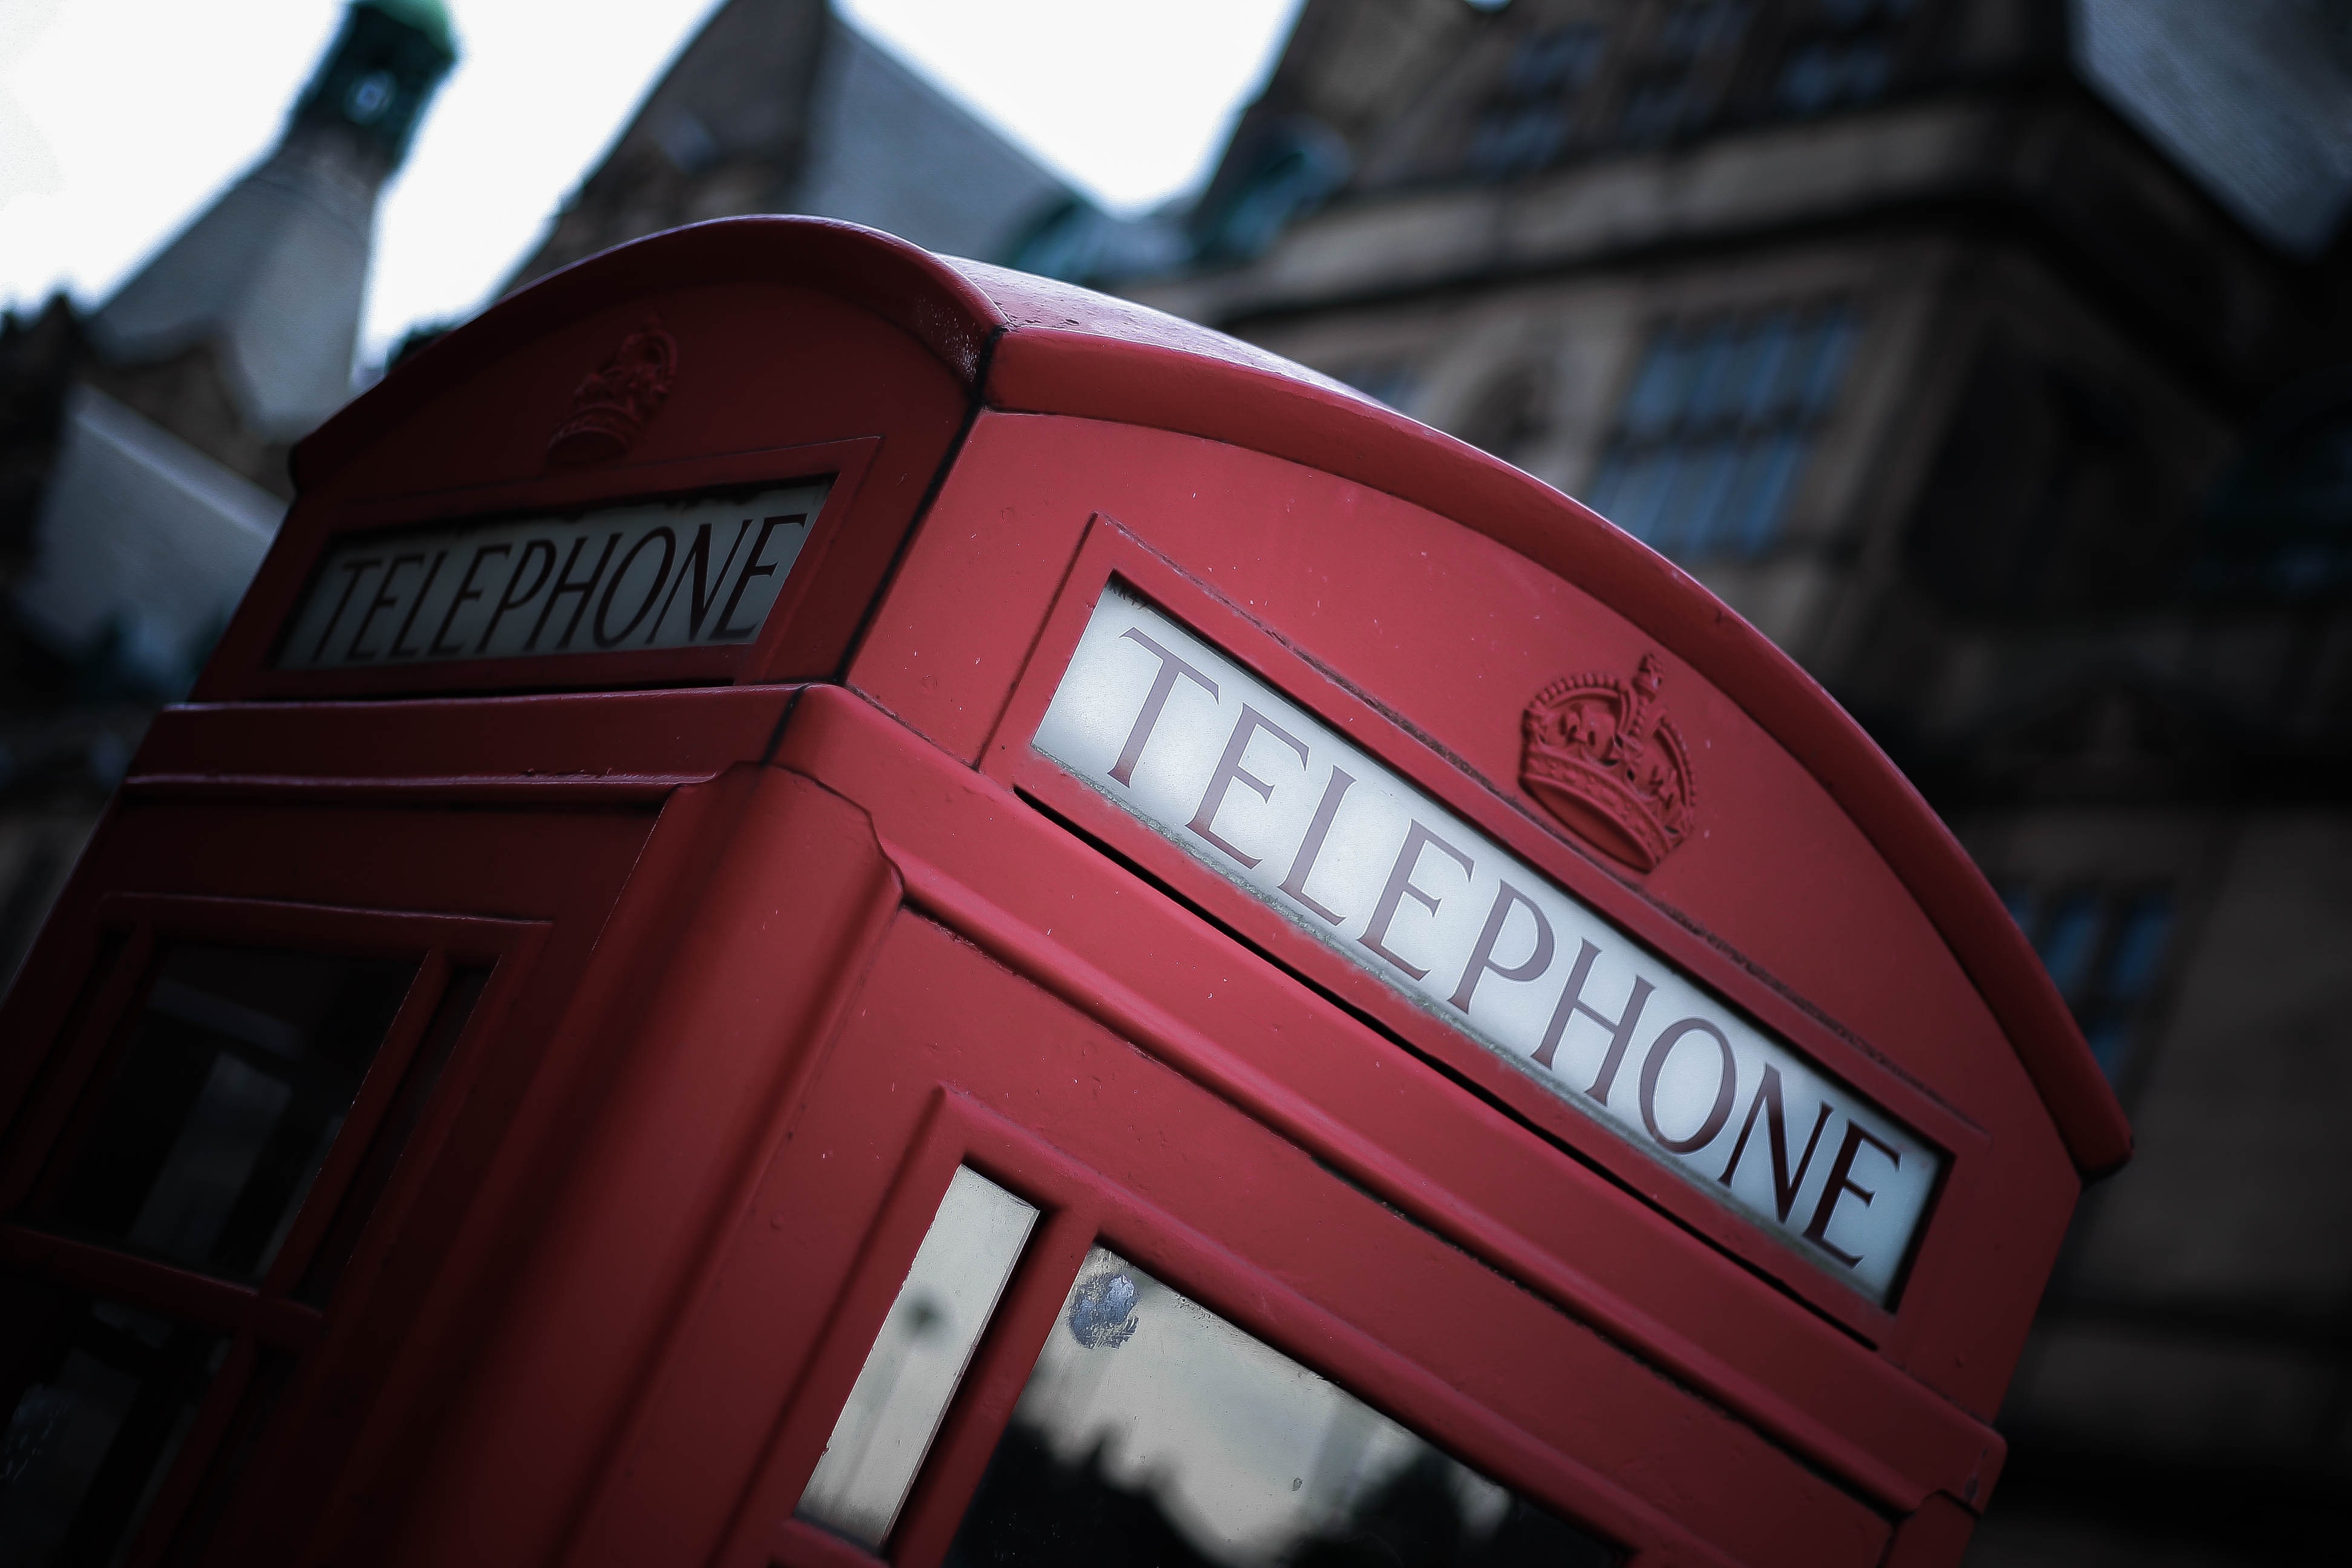 Ее телефон на английском. Телефонная будка Англия. Телефонная будка Лондон. Телефонная Бутка Англии. Красная будка в Лондоне.